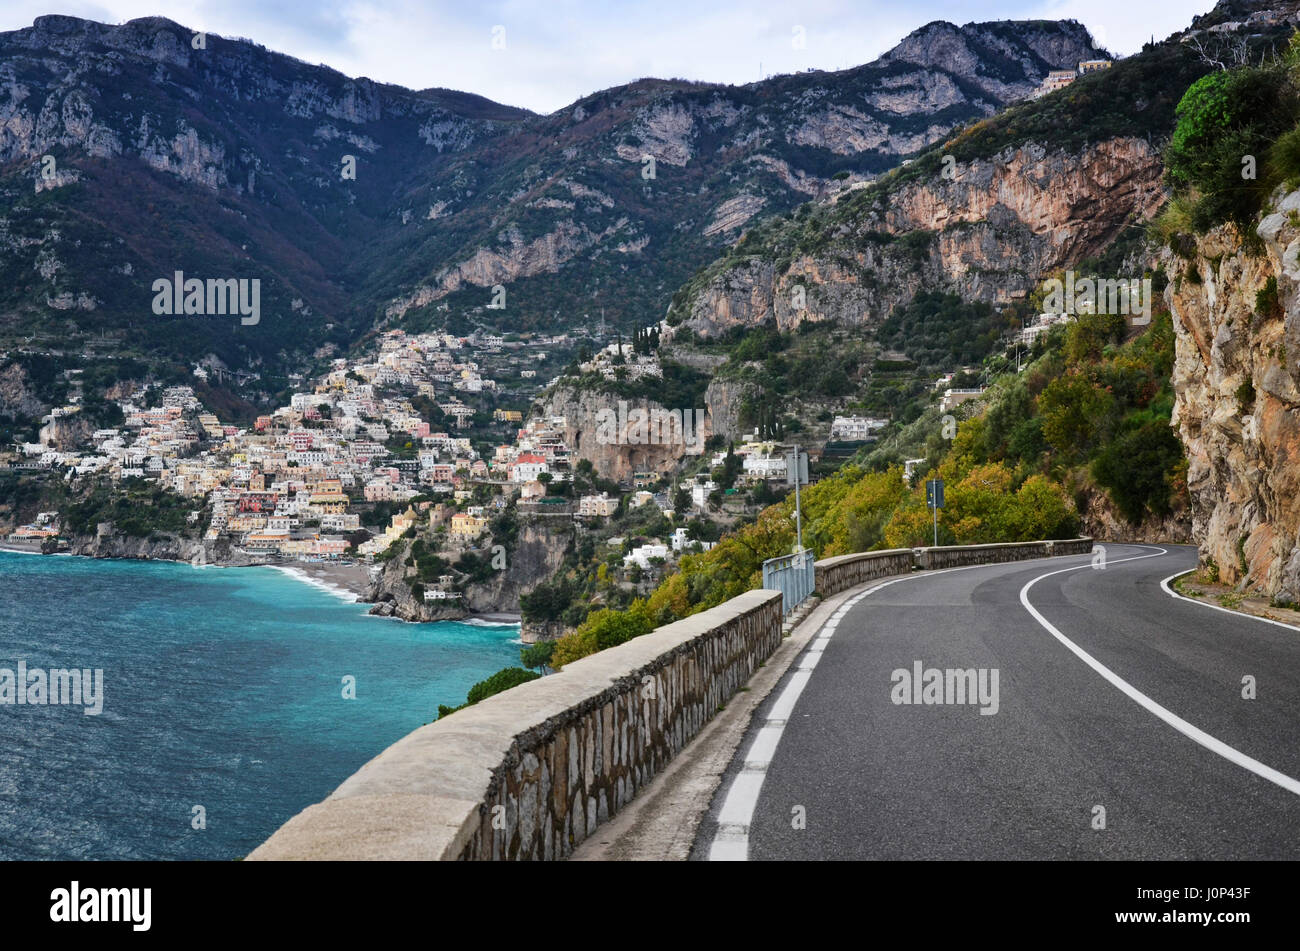 Scenic Coastal Road, Positano, Amalfi Coast, Italy. Stock Photo